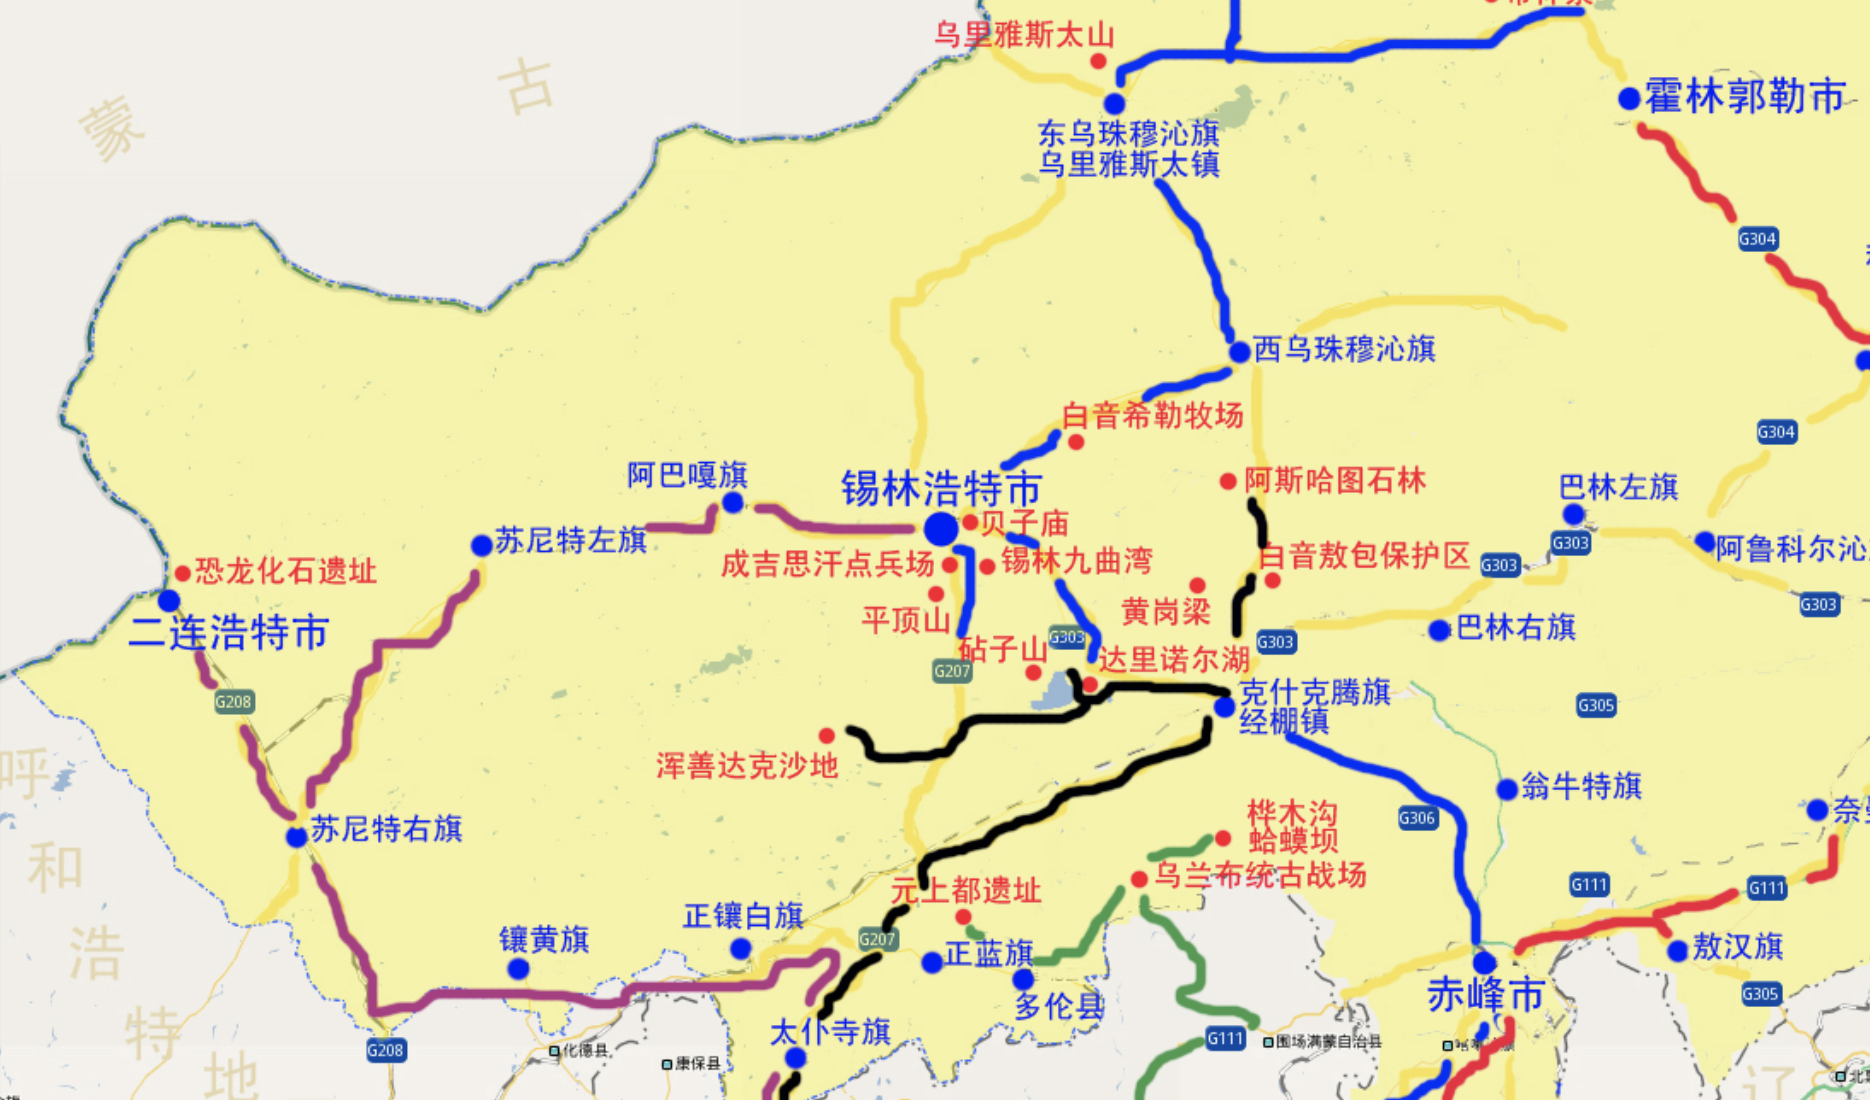 锡林郭勒地图地理位置展示_地图分享